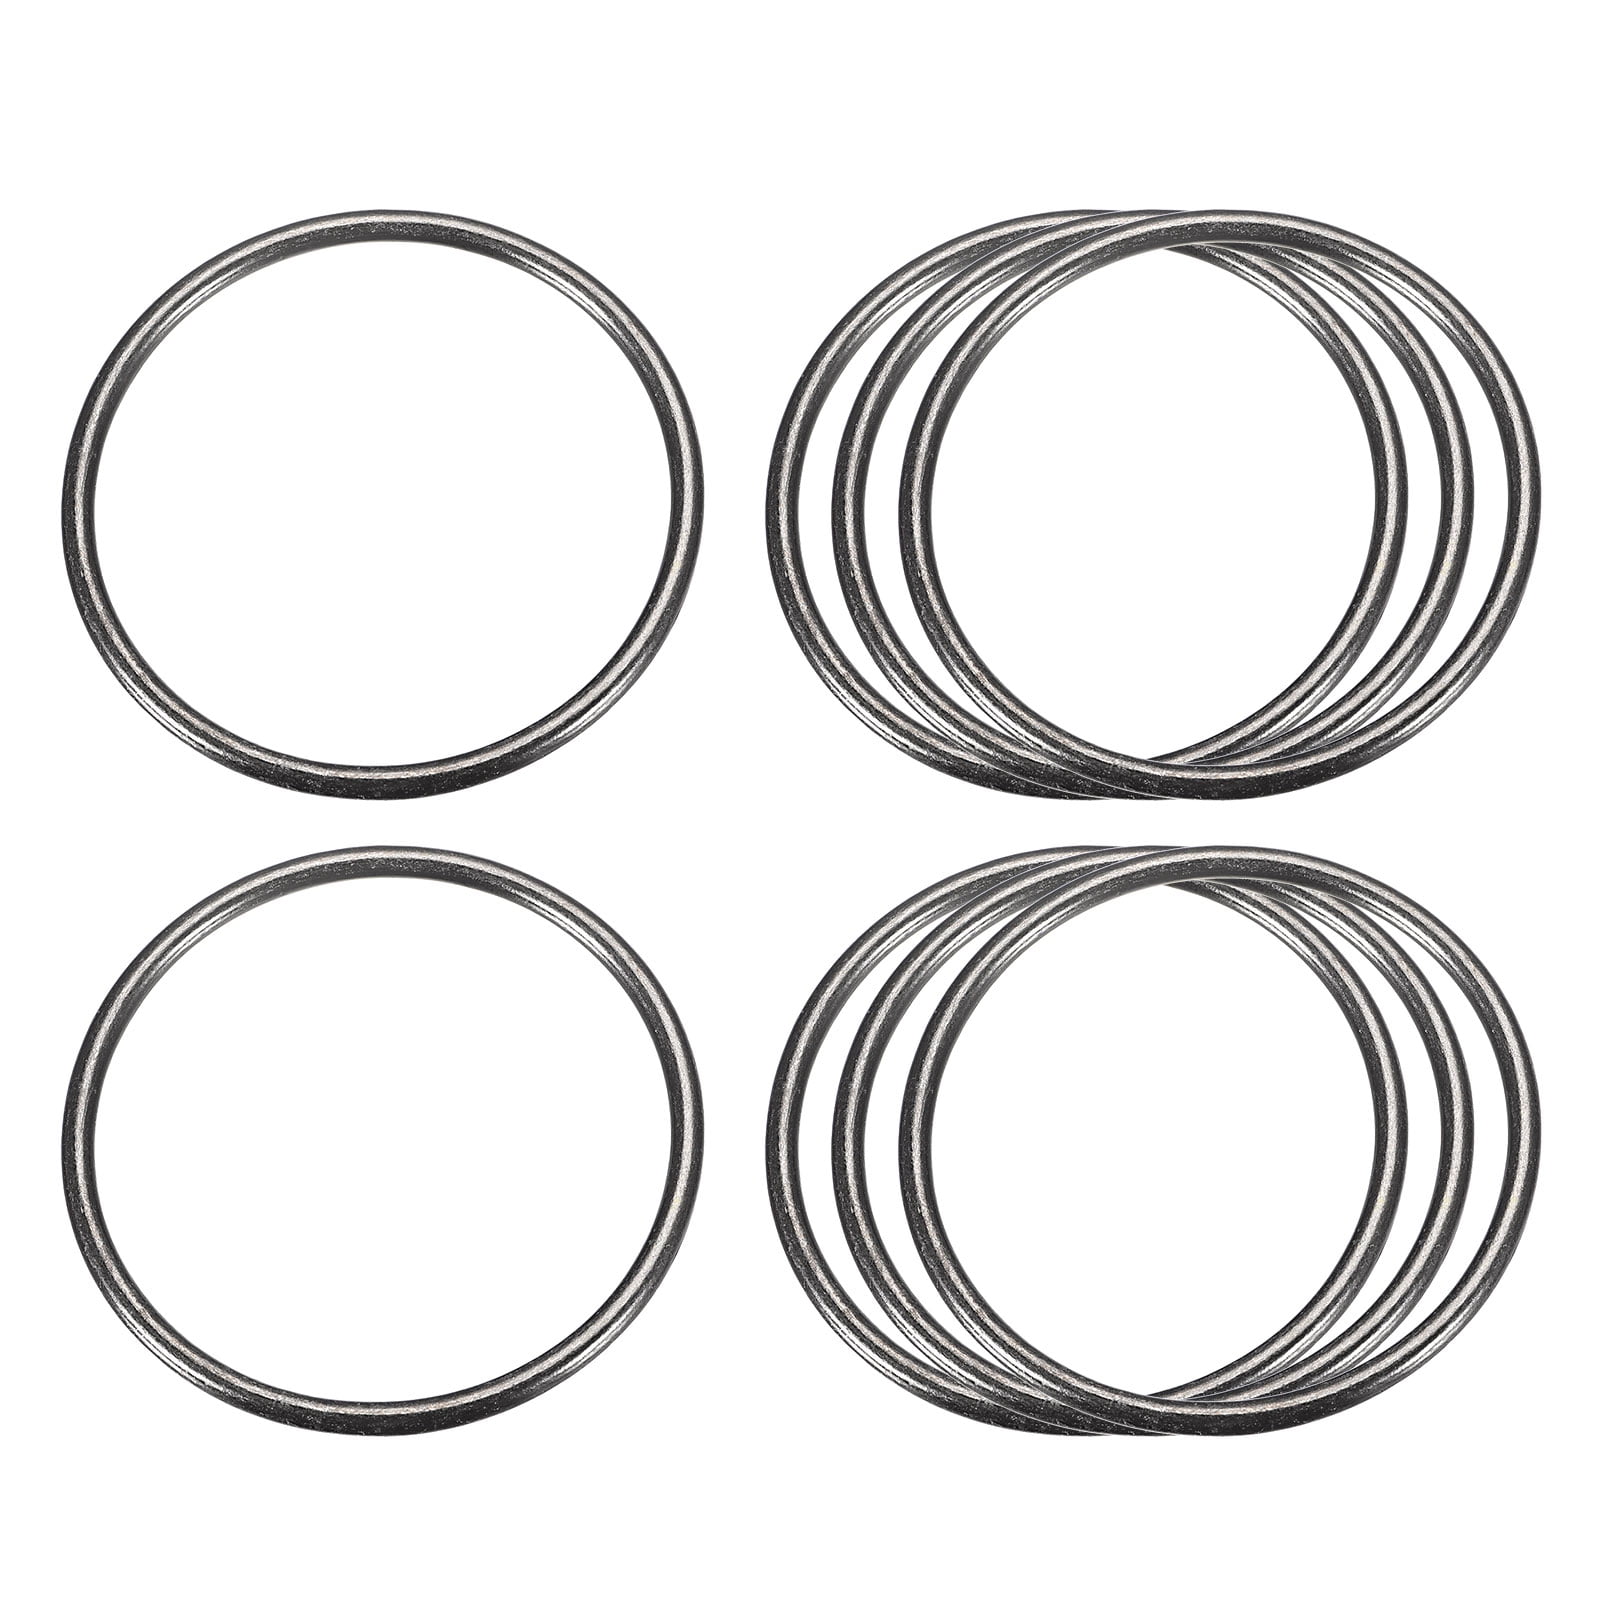 Metal O Rings, 8 Pack 50mm(1.97